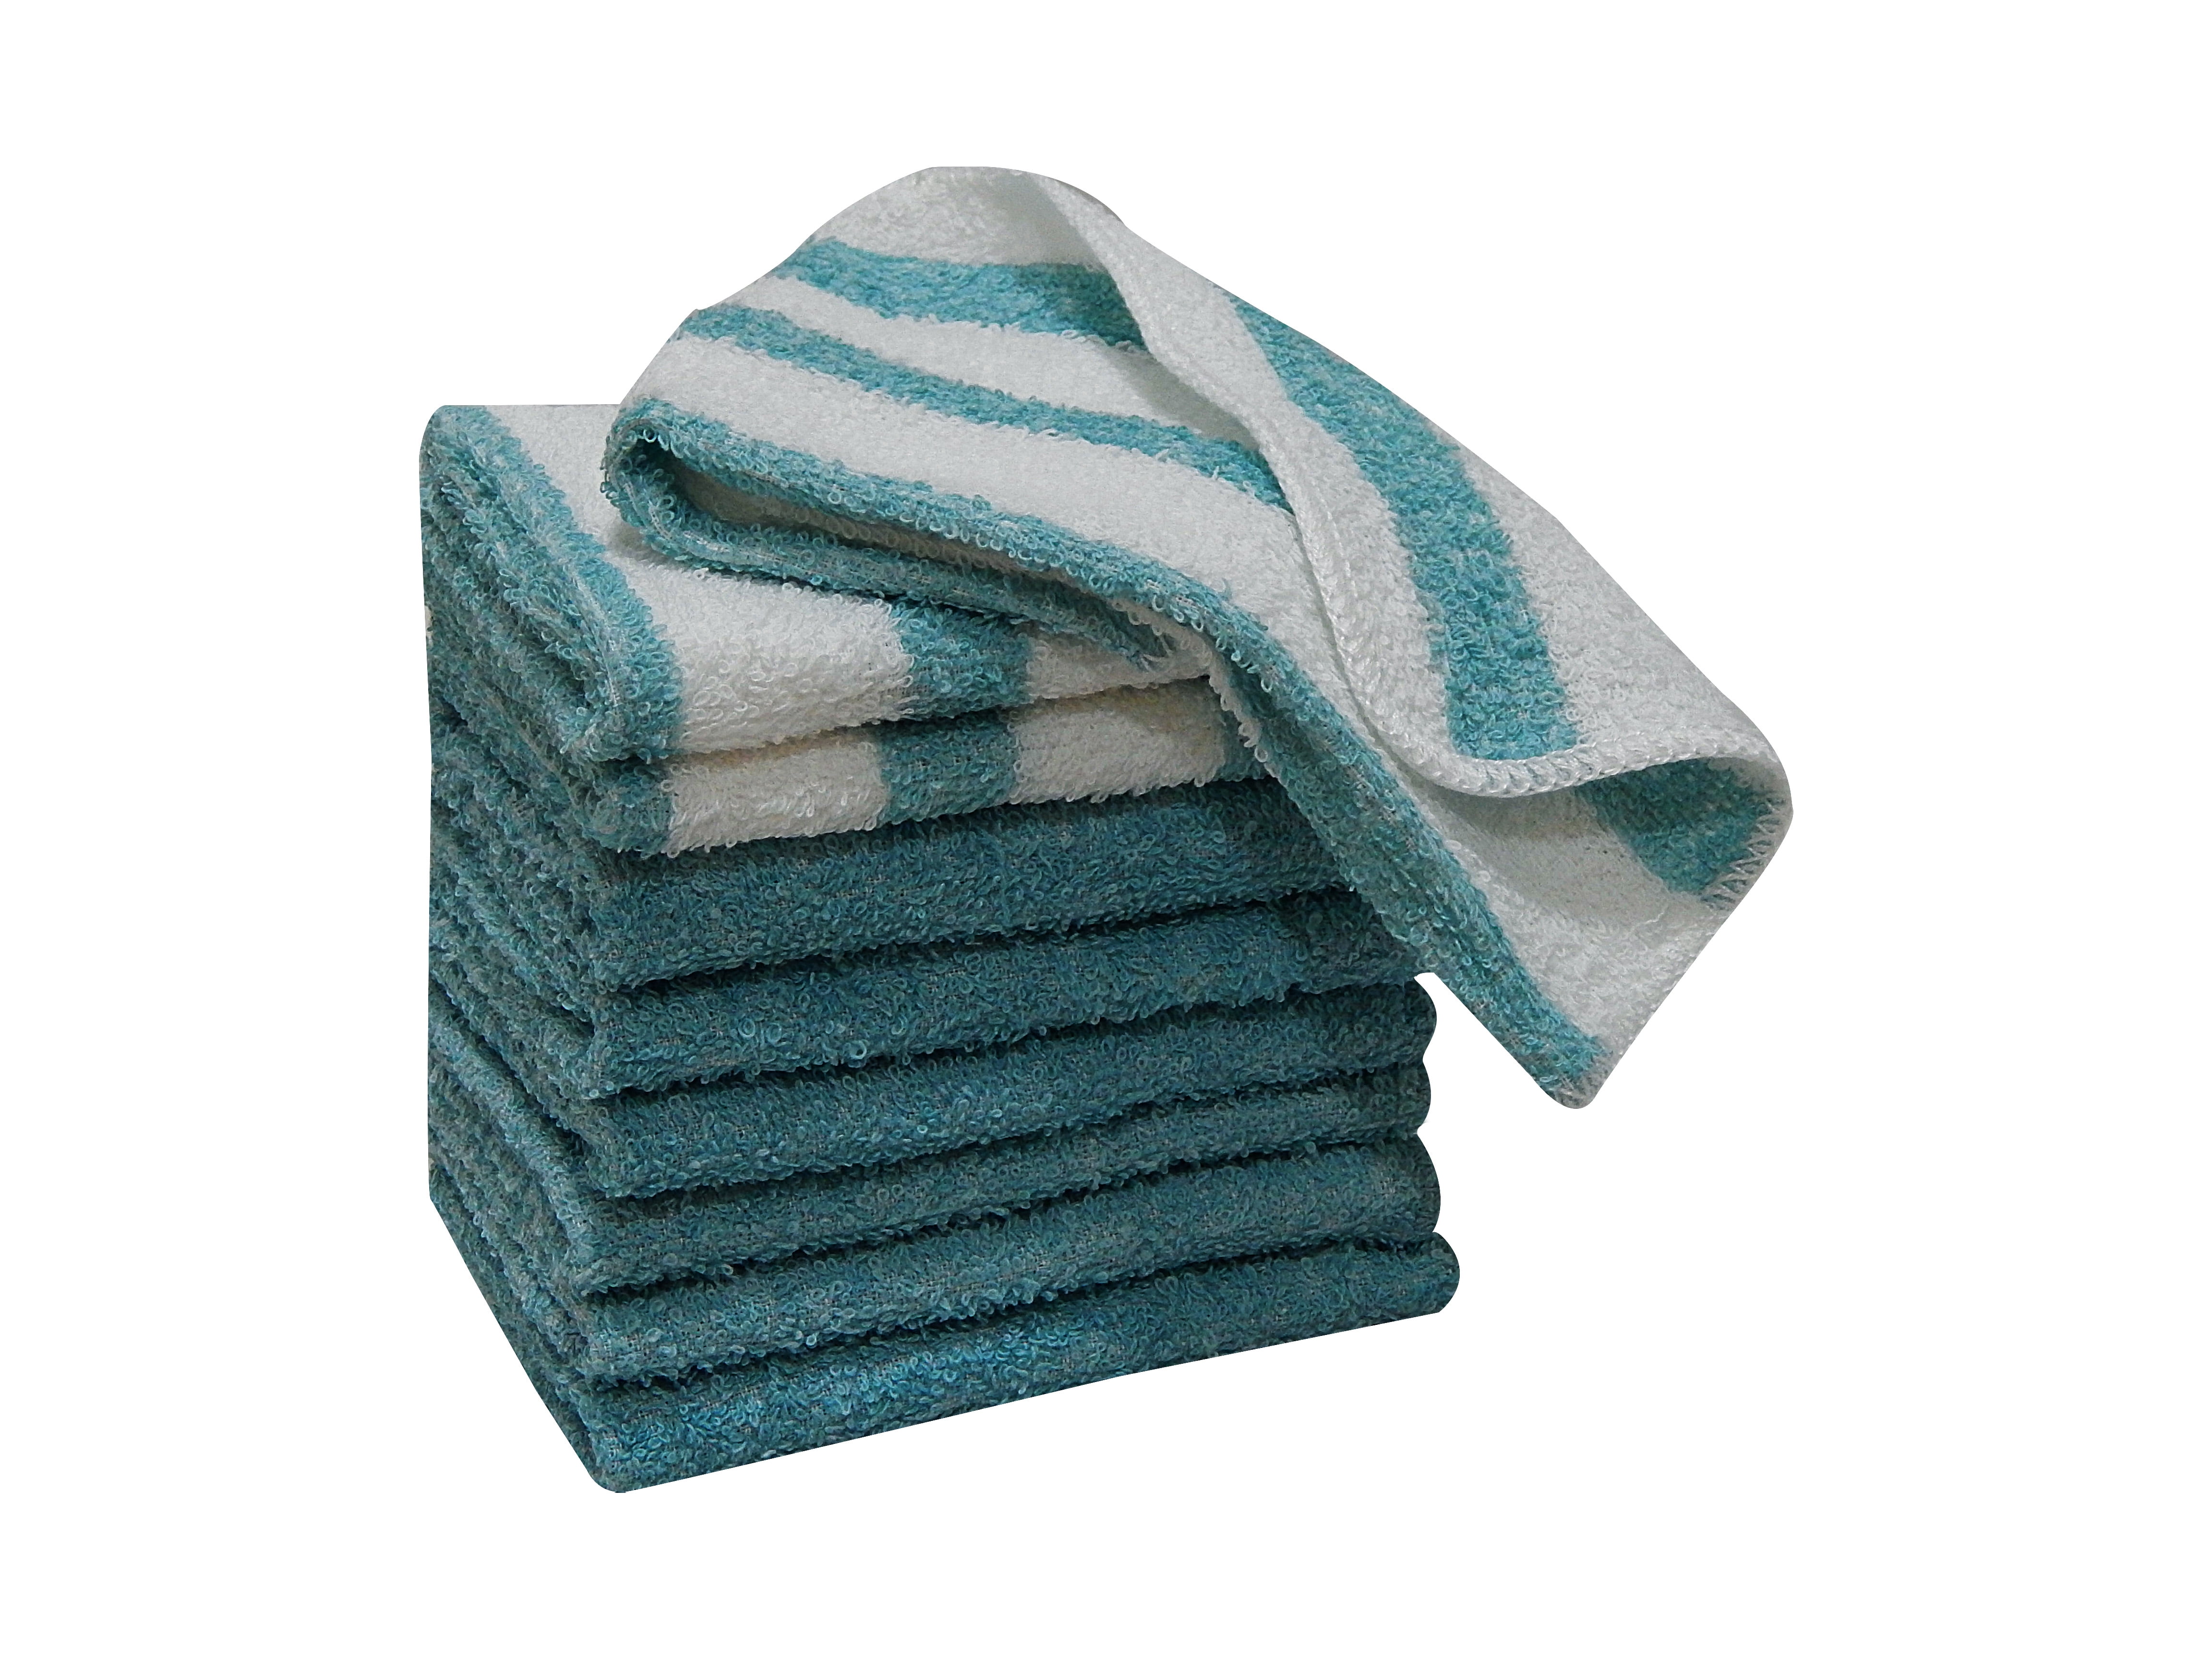 Mainstays 6-Piece Bar Mop Kitchen Towel Set, Solid White 